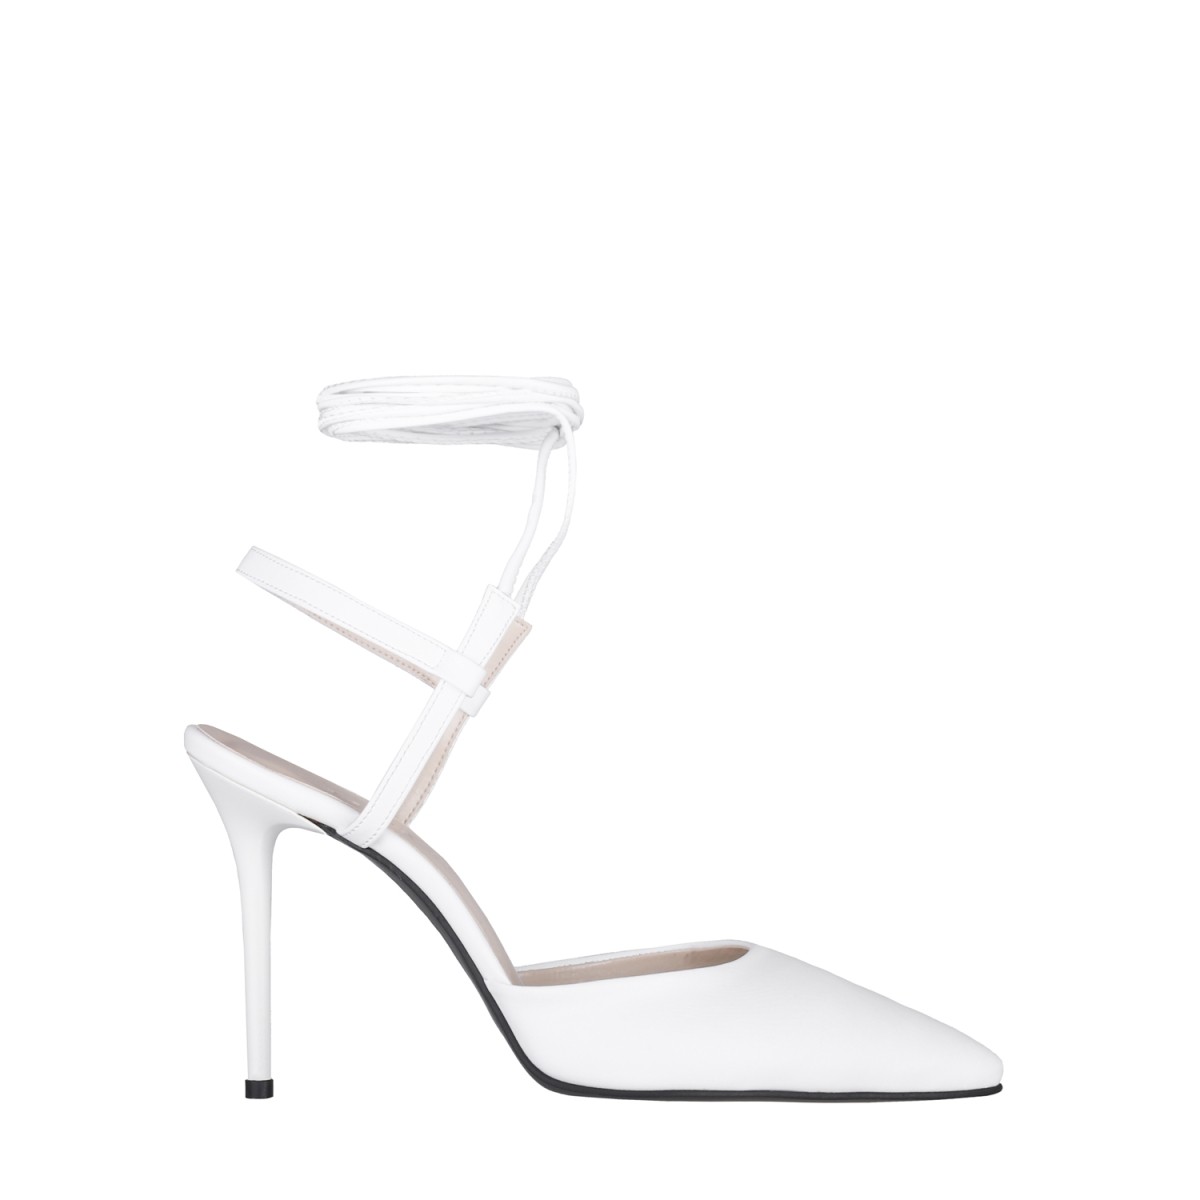 Victoria İnce Yüksek Topuklu Ayakkabı Stiletto Beyaz